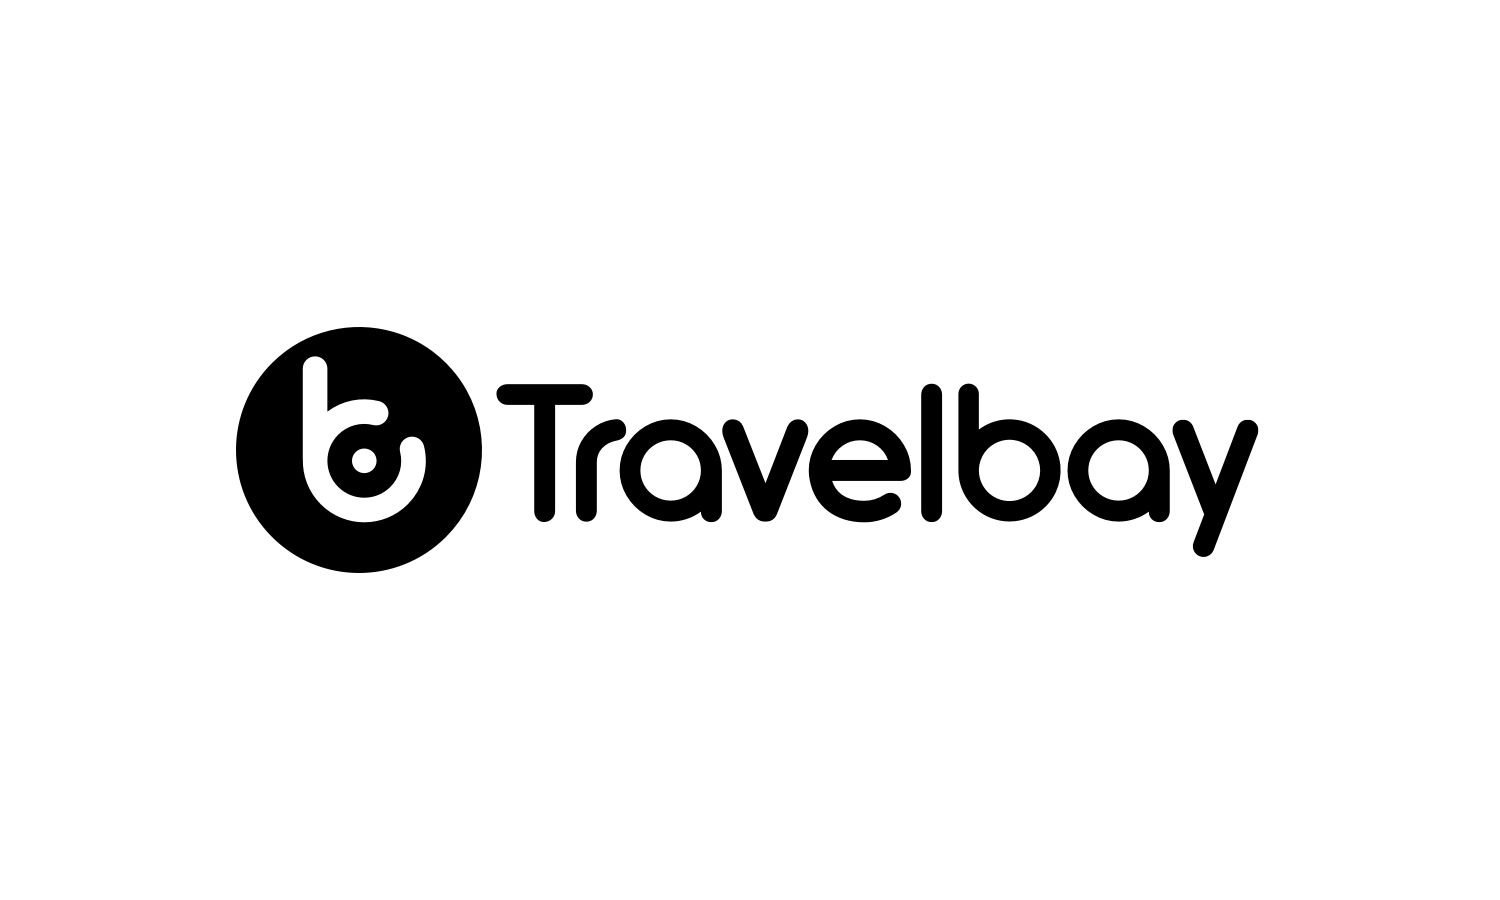 travelbay logo dark